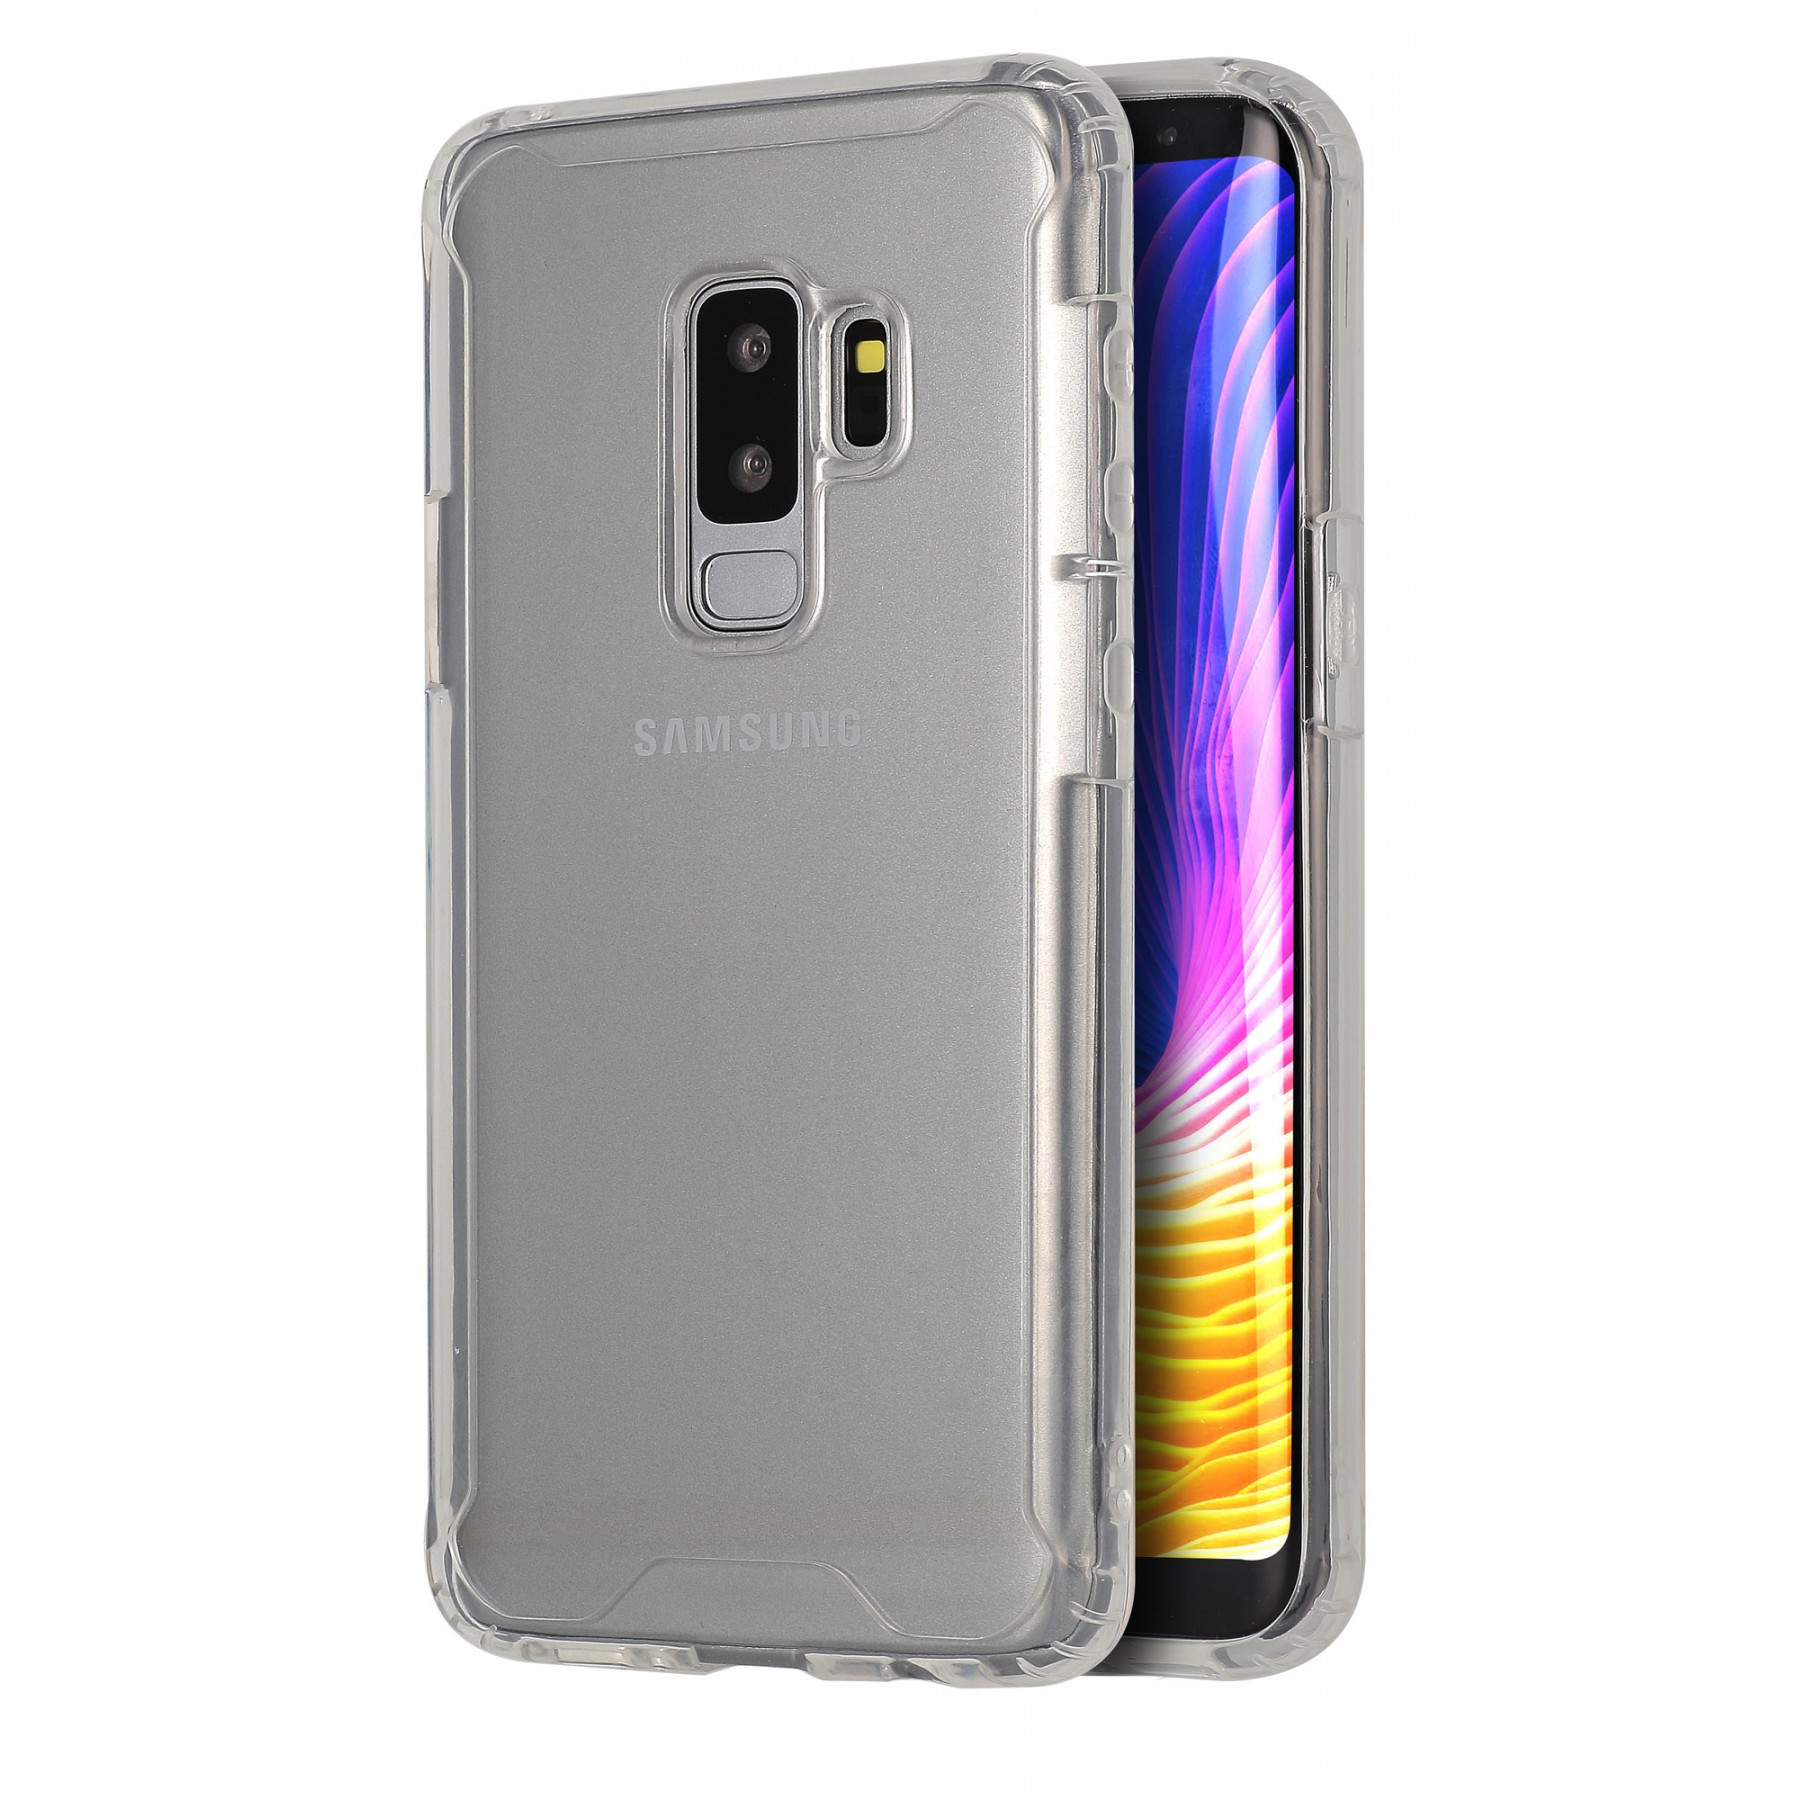 Coque Samsung Galaxy S9 Plus silicone transparente Oui au Vendredi ultra  resistant Protection housse Motif Ecriture Tendance La Coque Francaise -  Coquediscount